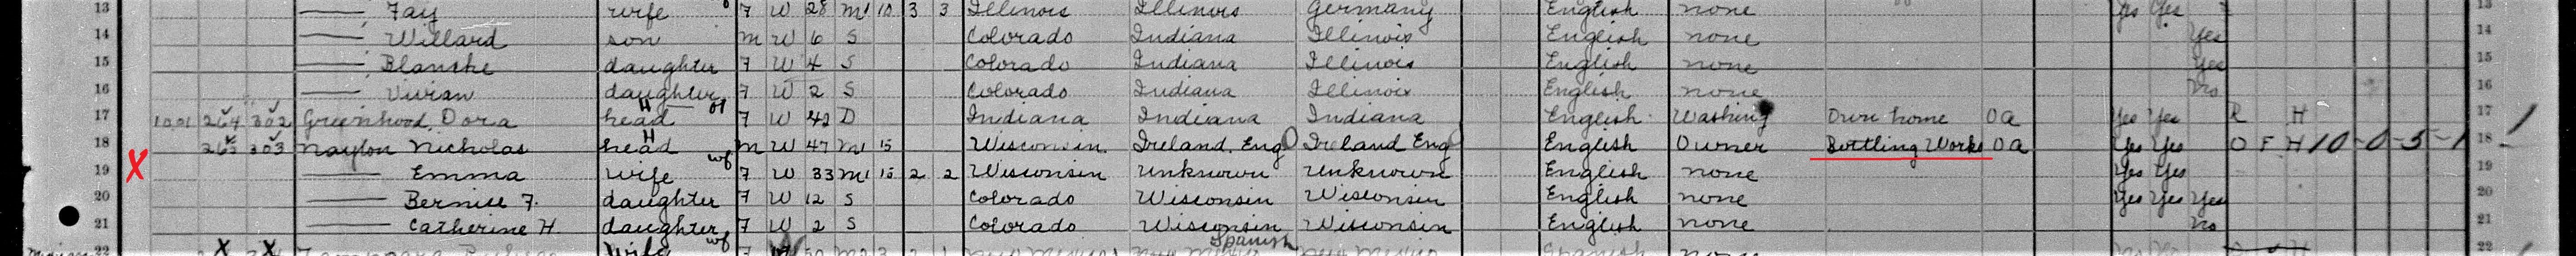 Pueblo Colorado Nicholos Naylon 1910 U.S. Census Cropped.jpg